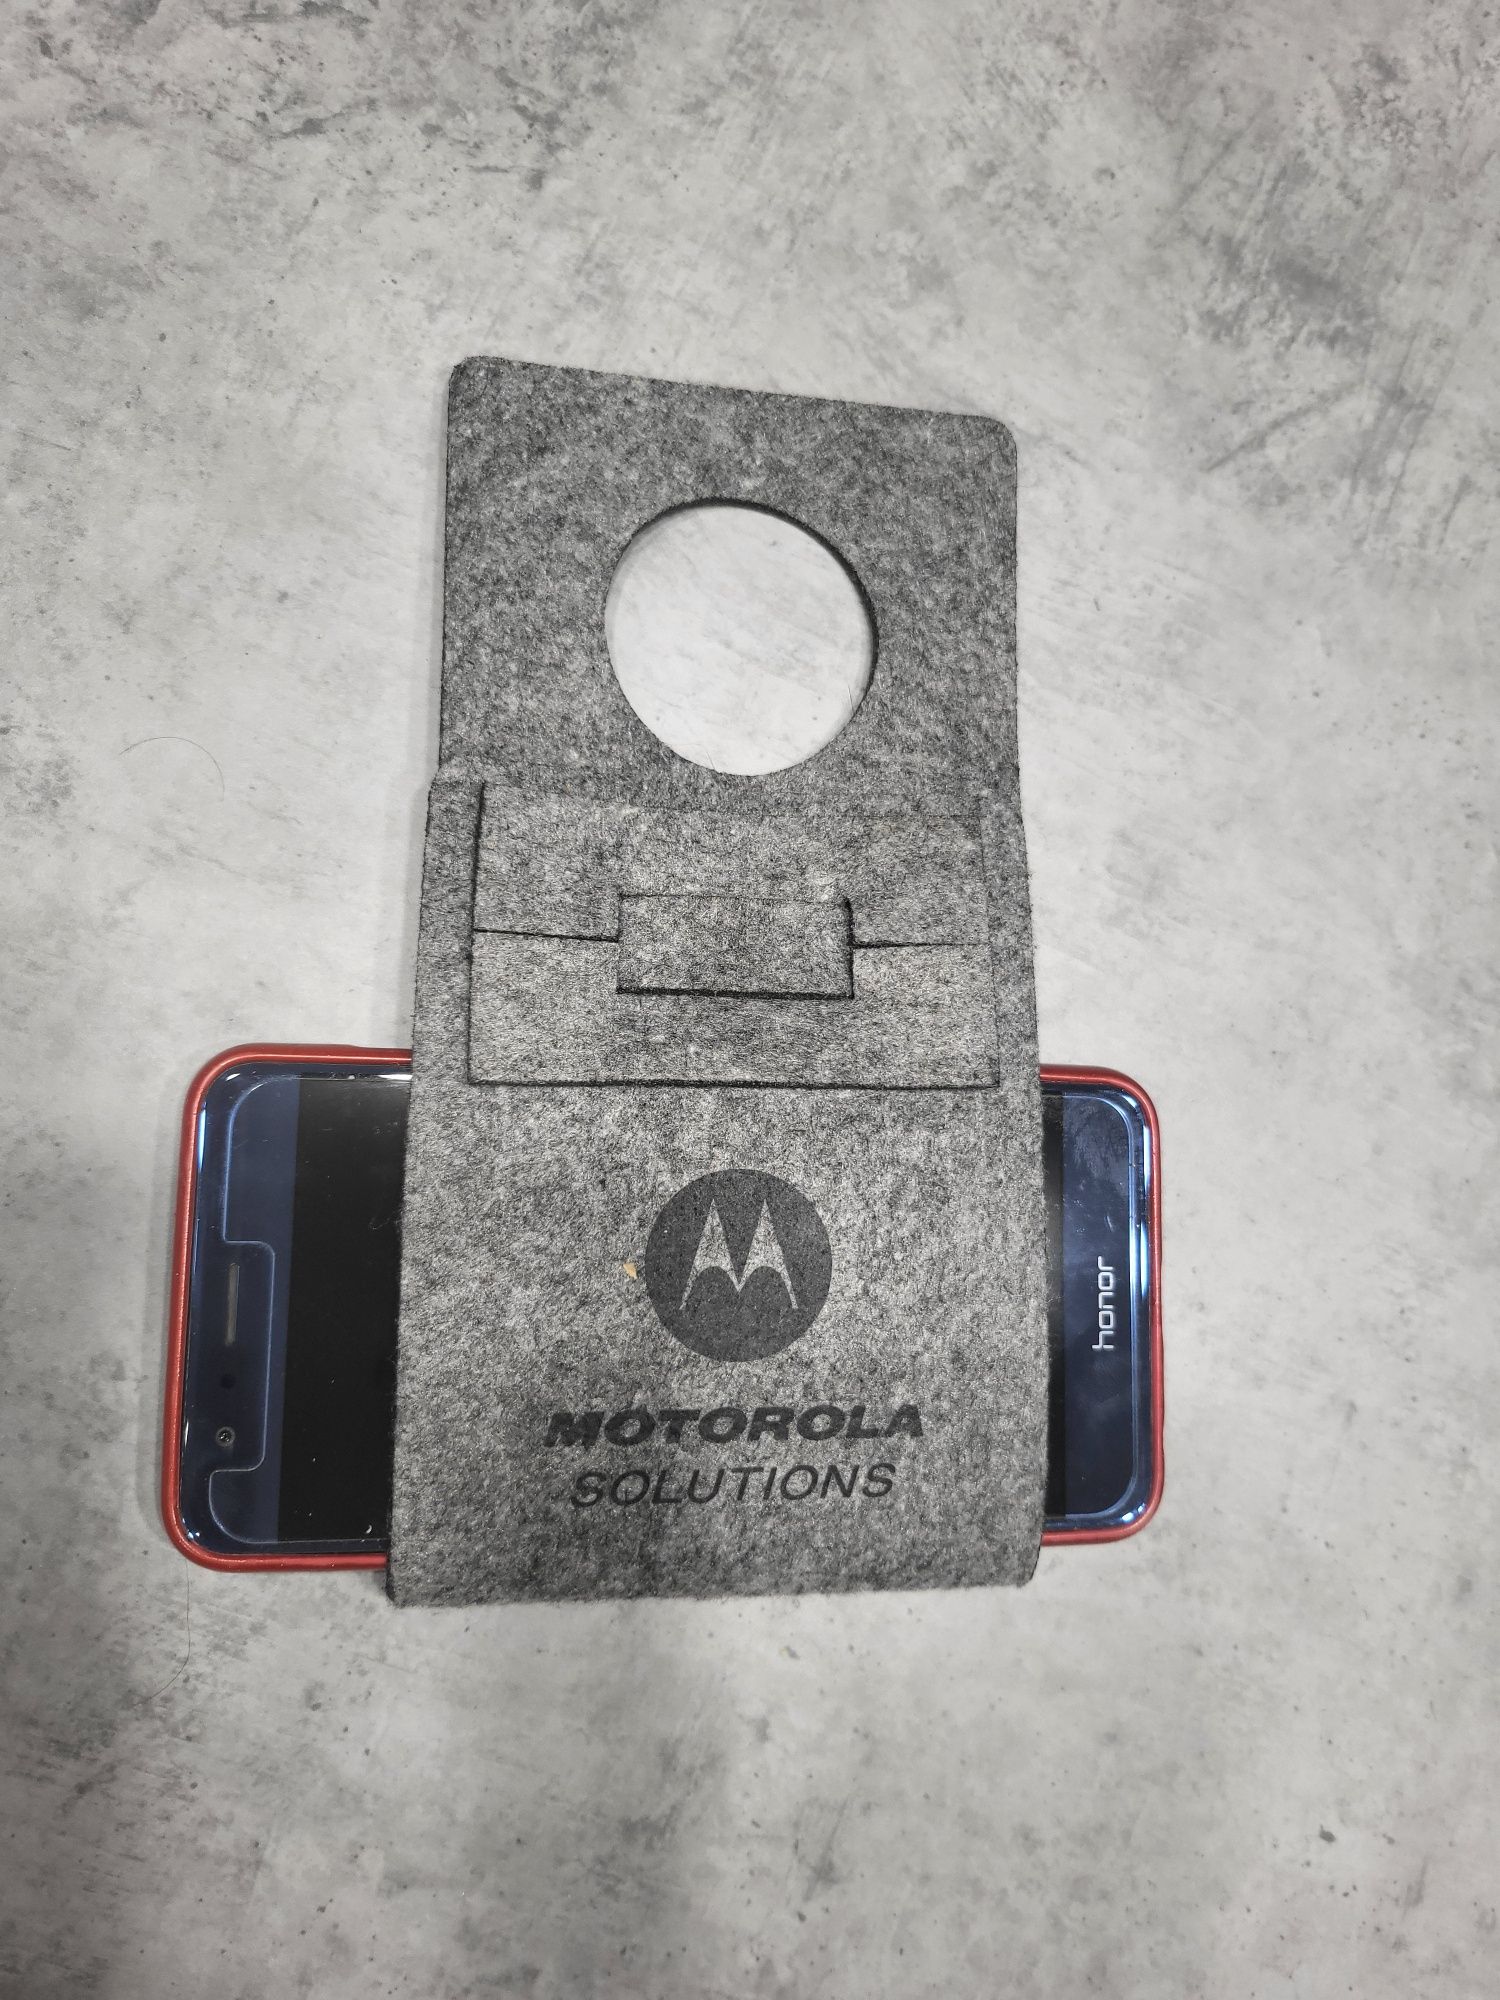 Uchwyt do ładowania  telefonu  nowy
Motorola 

Wymiary:19 x 9 x 0,5 cm